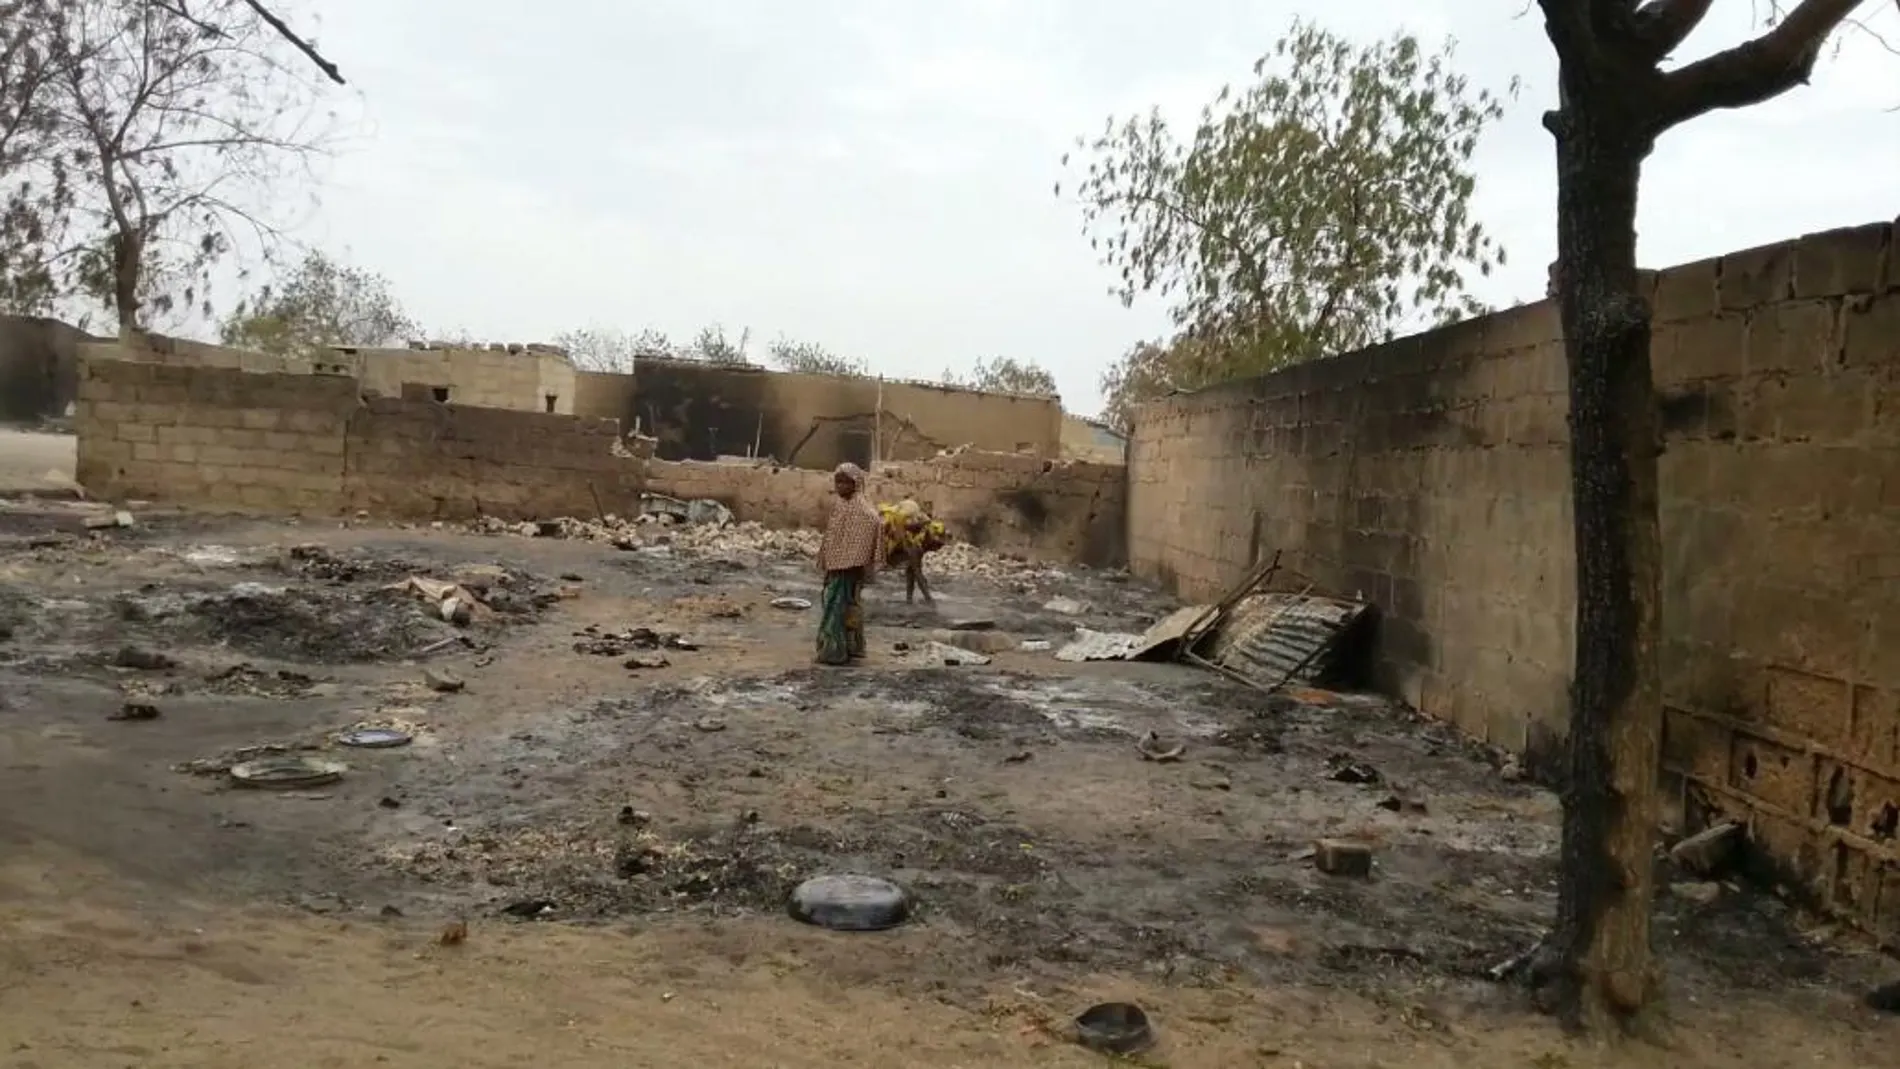 Imagen de las ruinas de Baga en Nigeria